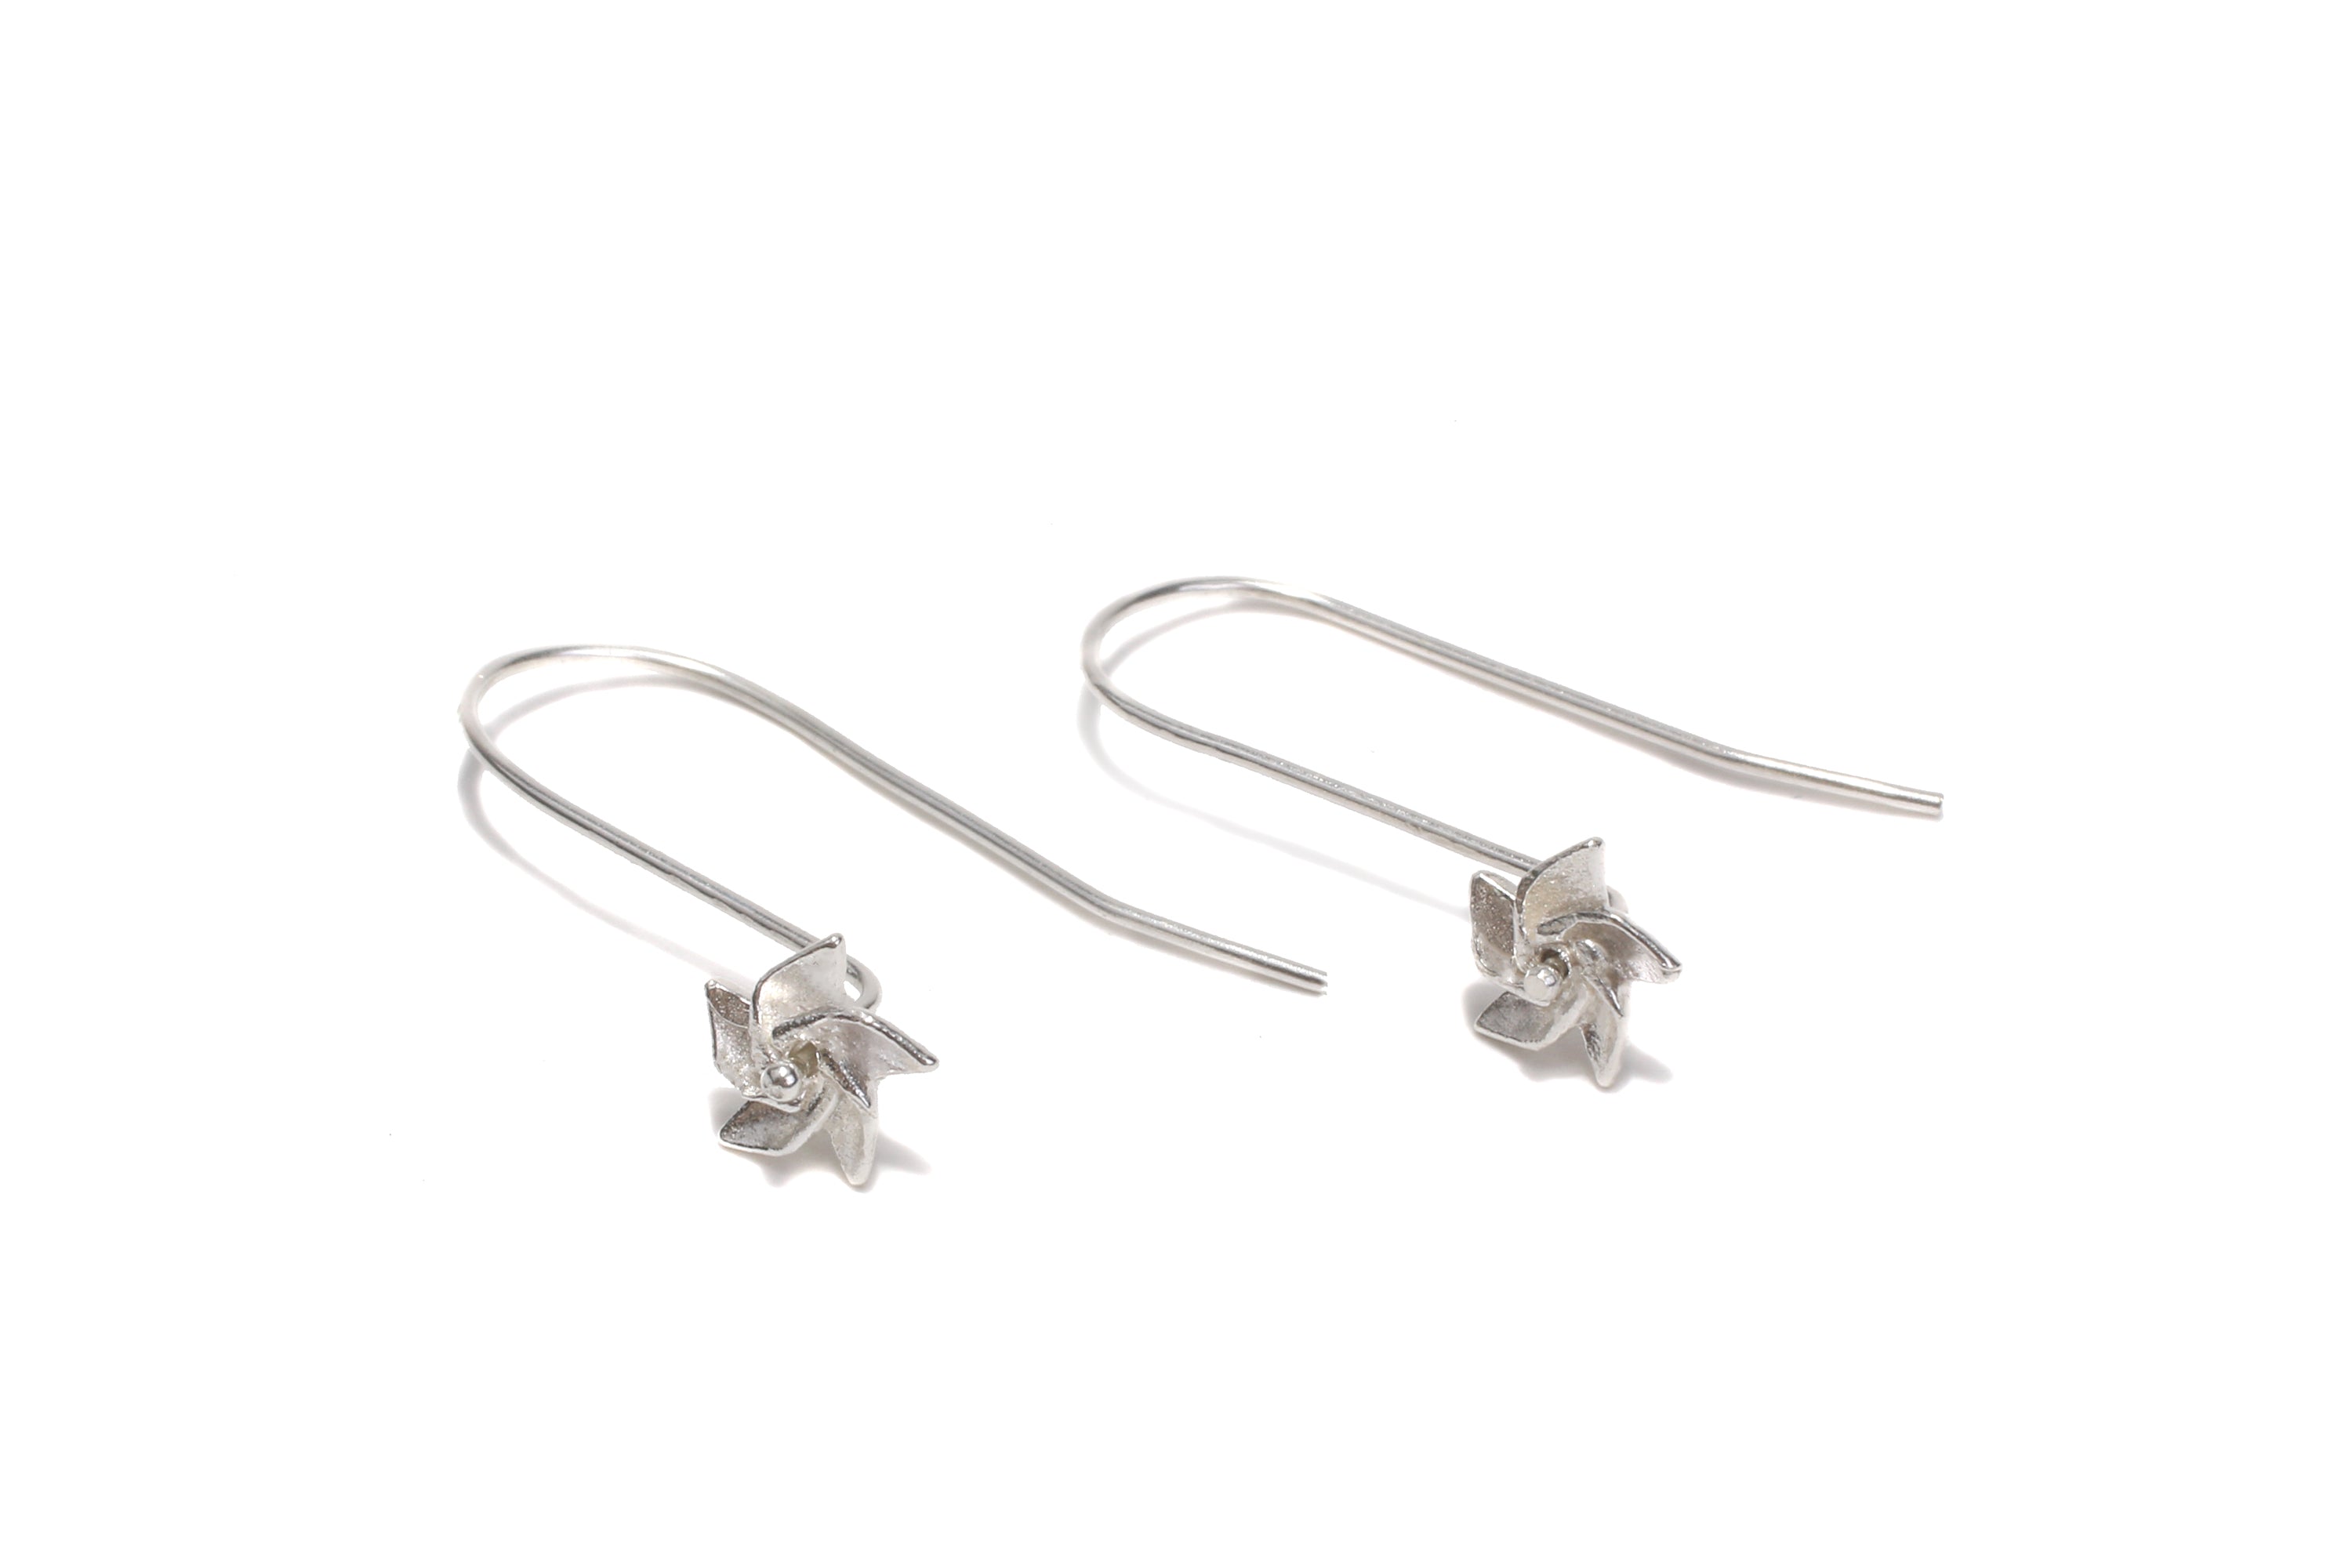 Pinwheel Earrings